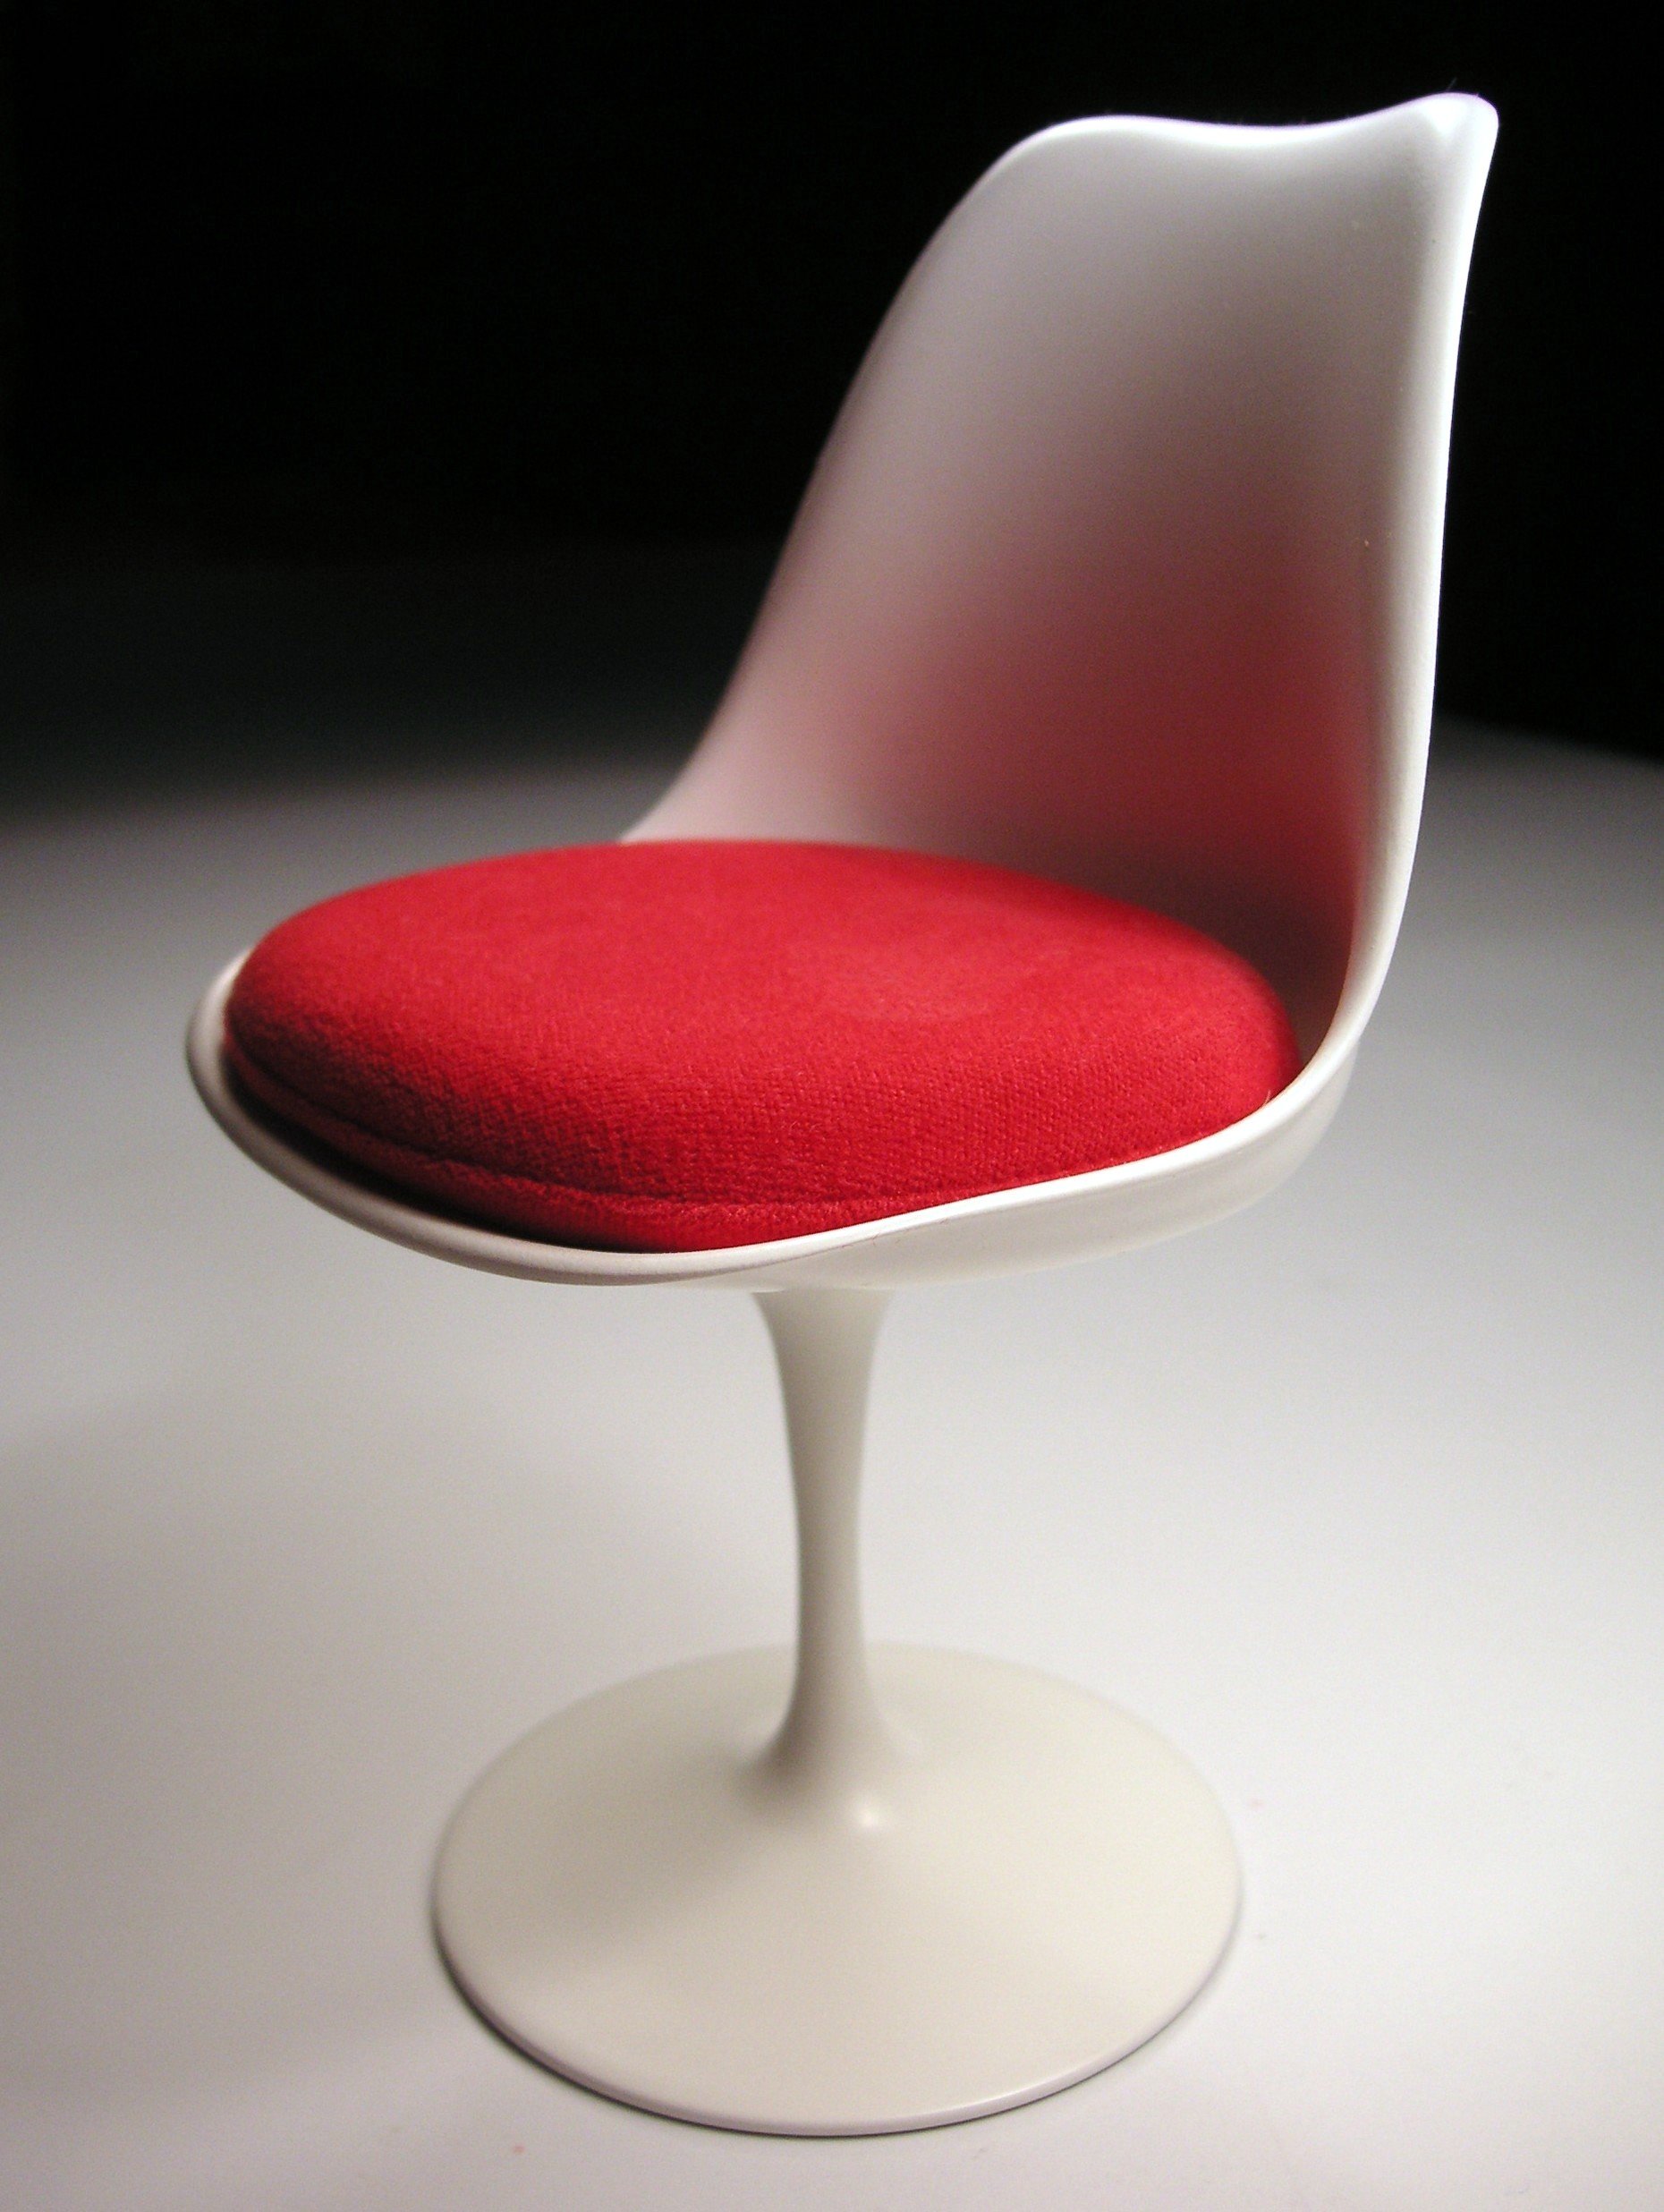 Tulip chair designed by Eero Saarinen, 1955–56